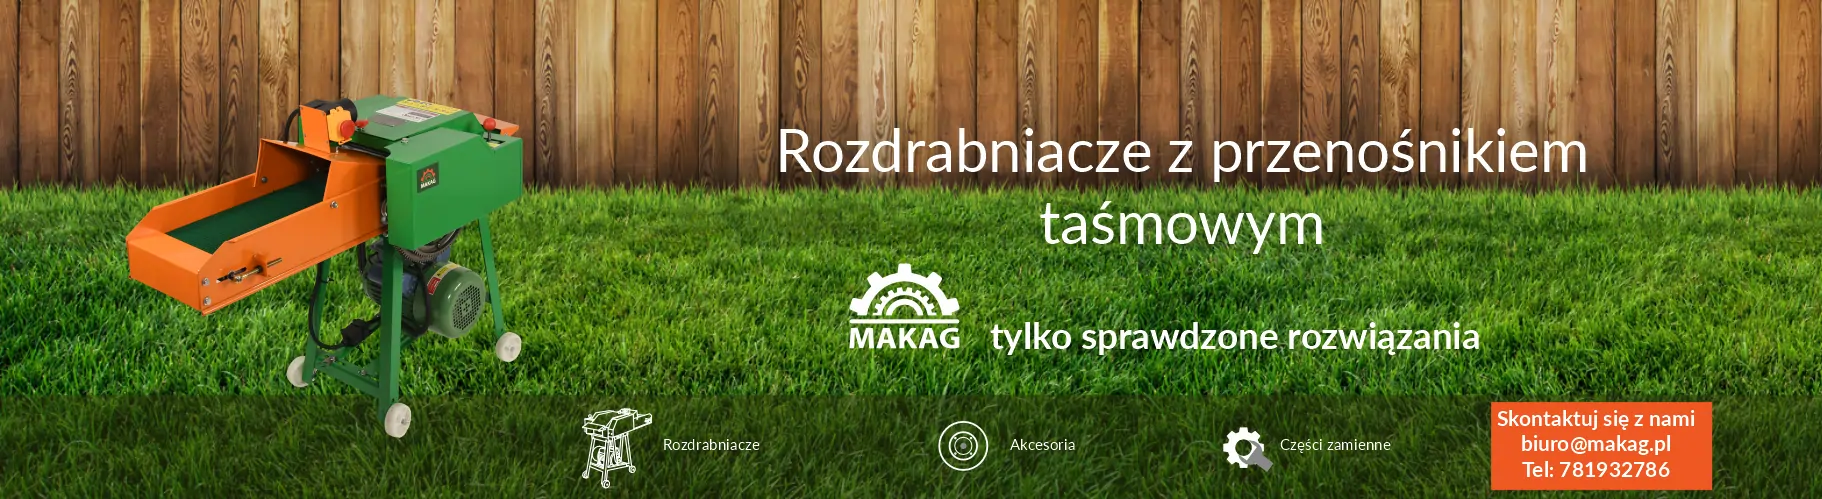 MAKAG.pl